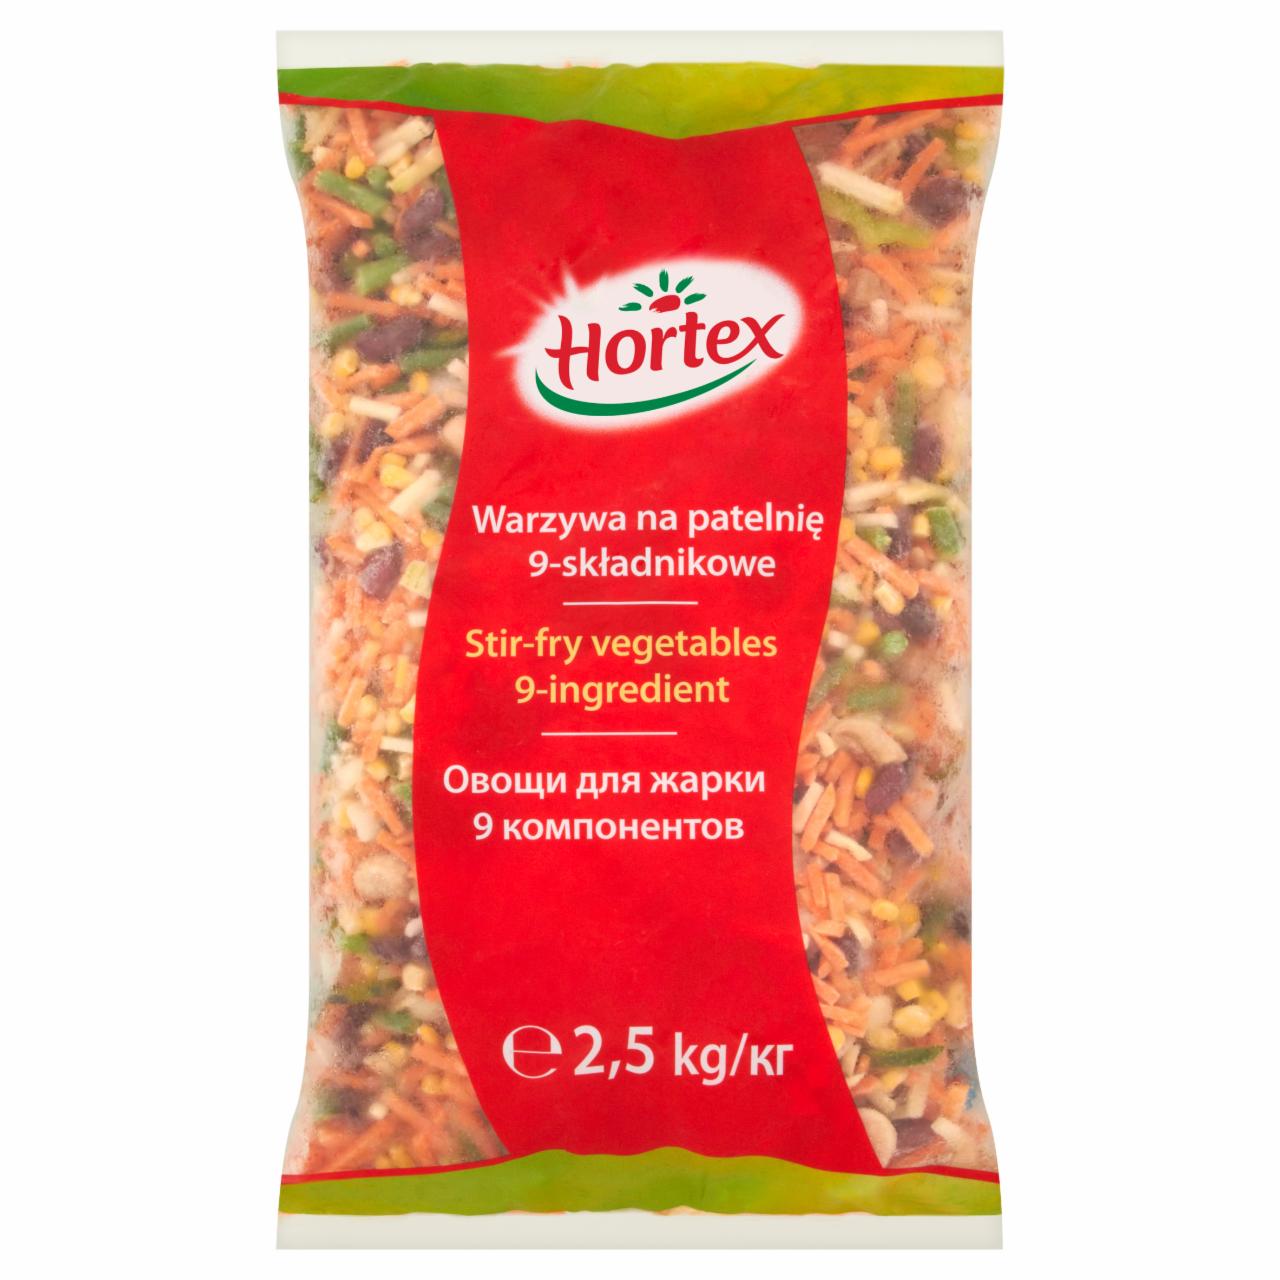 Zdjęcia - Hortex Warzywa na patelnię 9-składnikowe 2,5 kg